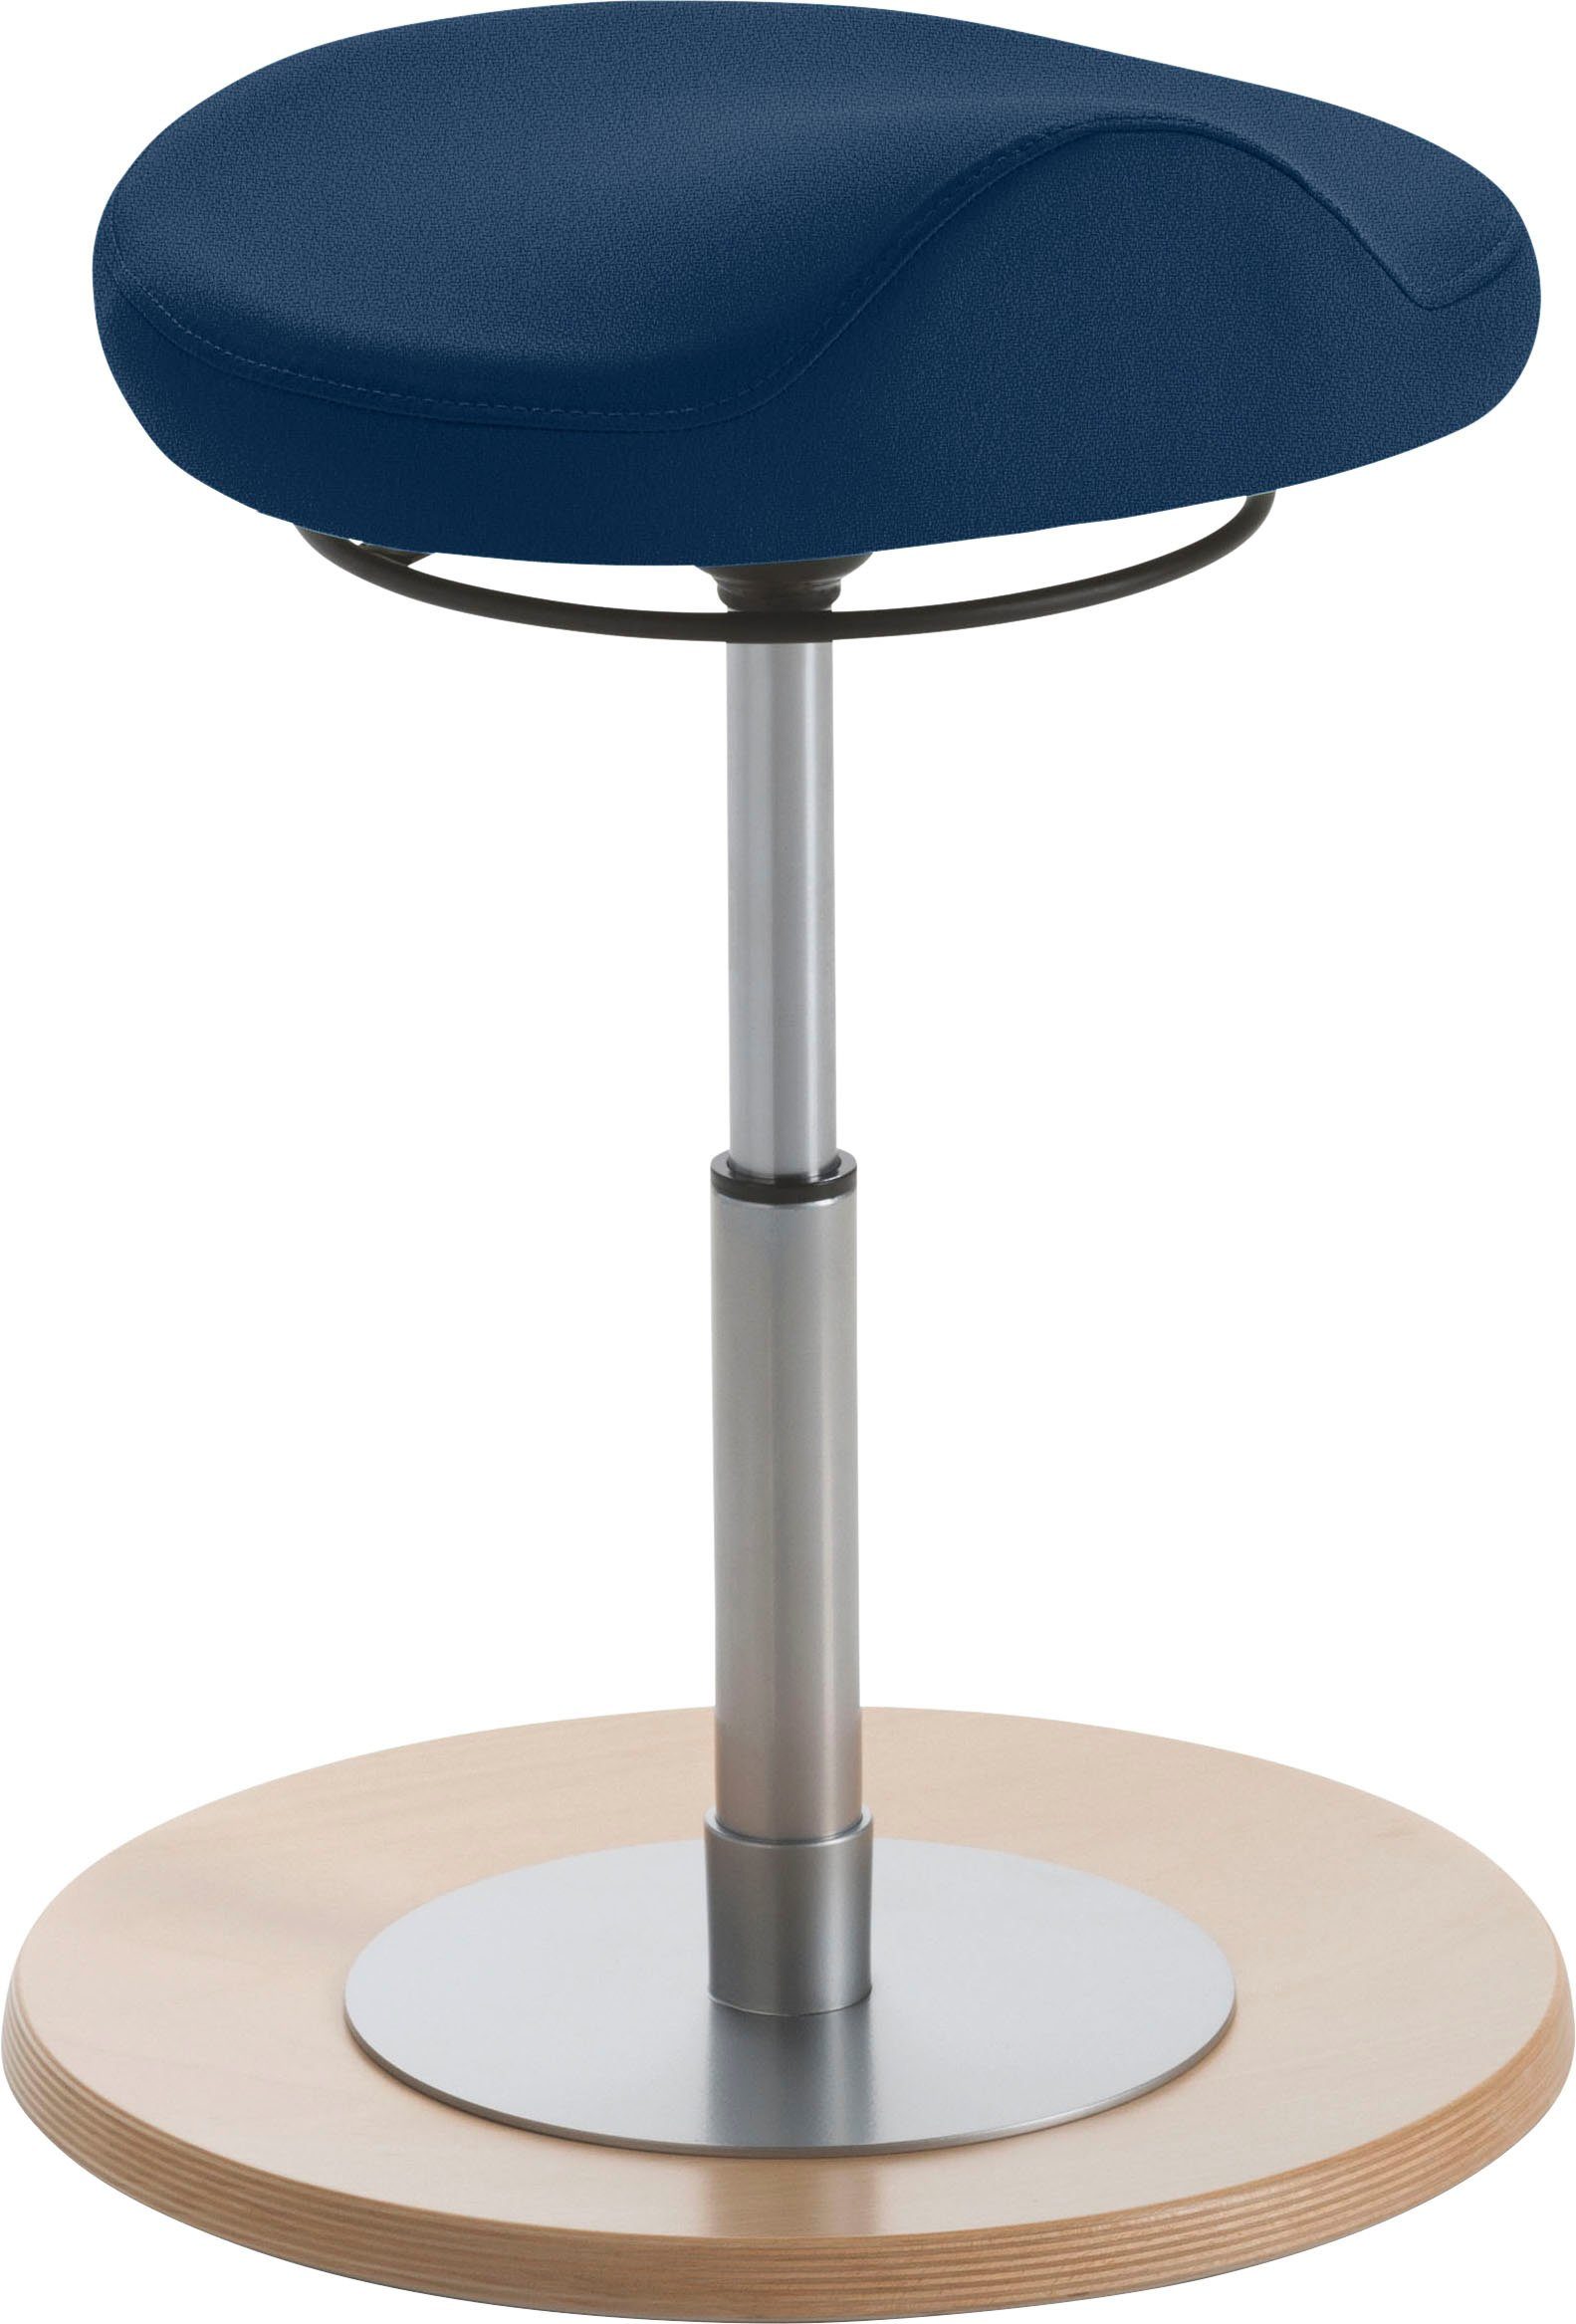 Sitzmöbel Sitzhocker mit Komfortsitz ergonomisch 1102 geformtem St), Dunkelblau | 1102 Mayer Kinderpendelhocker (1 Dunkelblau